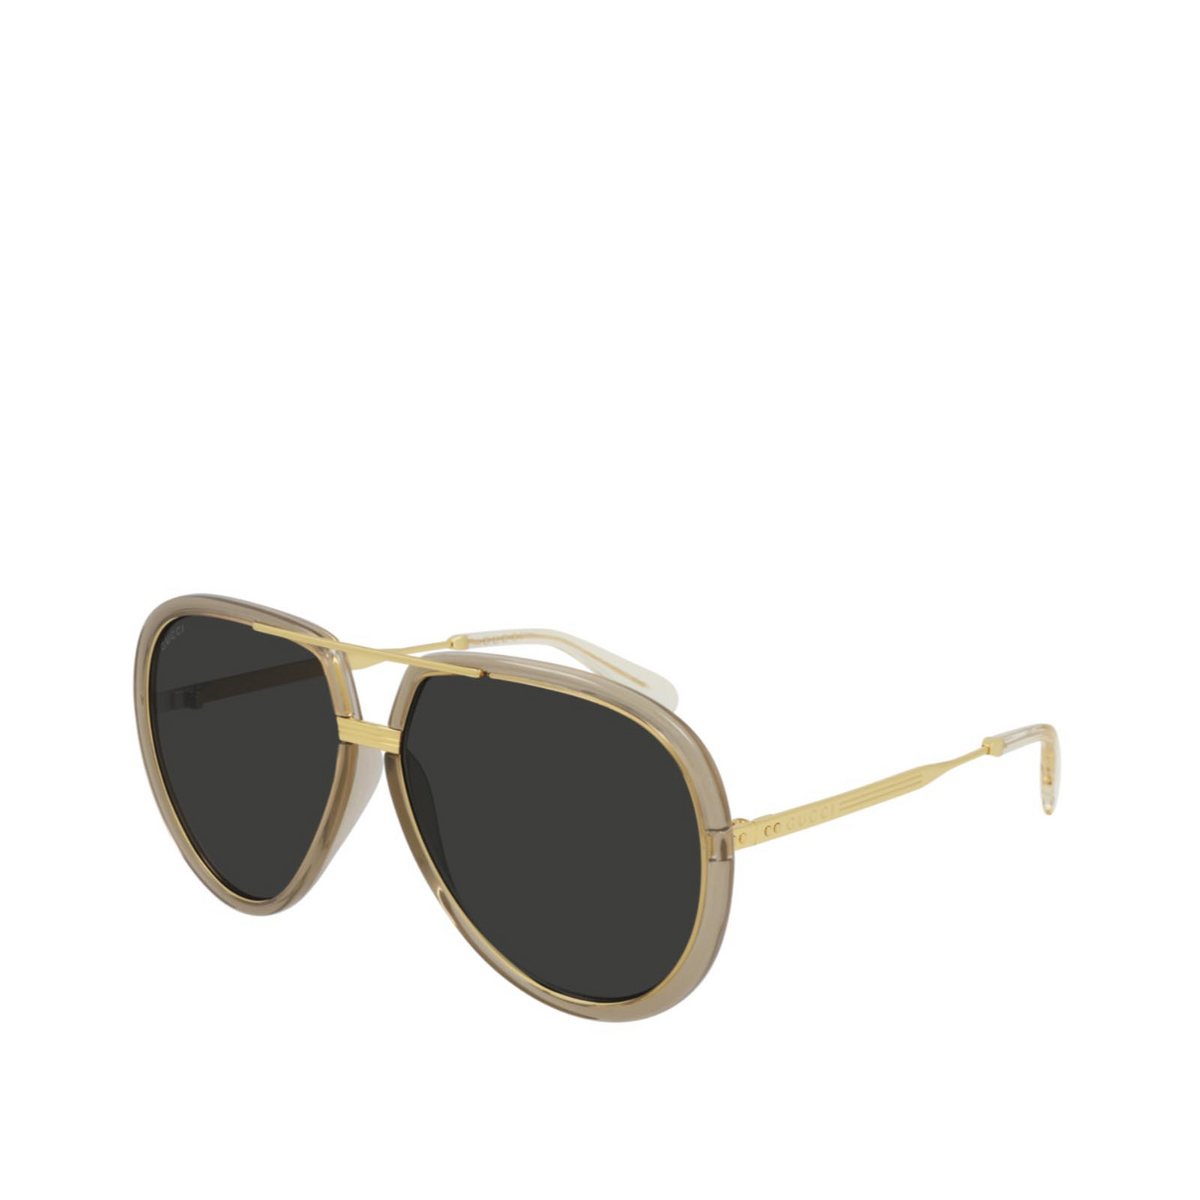 Gucci® Aviator Sunglasses: GG0904S color Green 002 - three-quarters view.